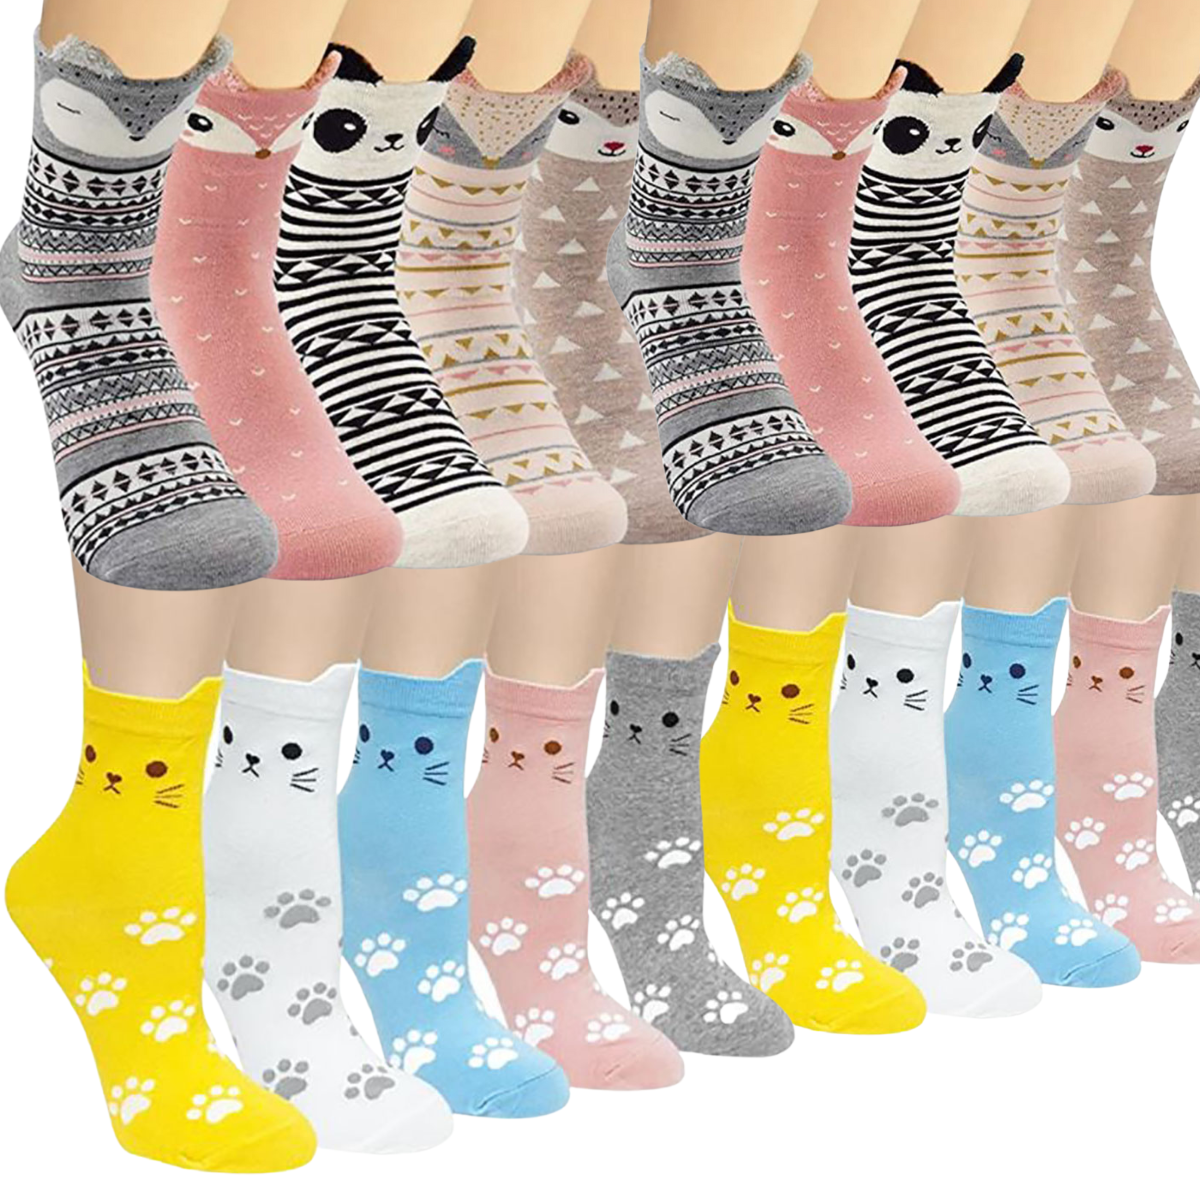 calcetines de algodon diseños (12 pares)